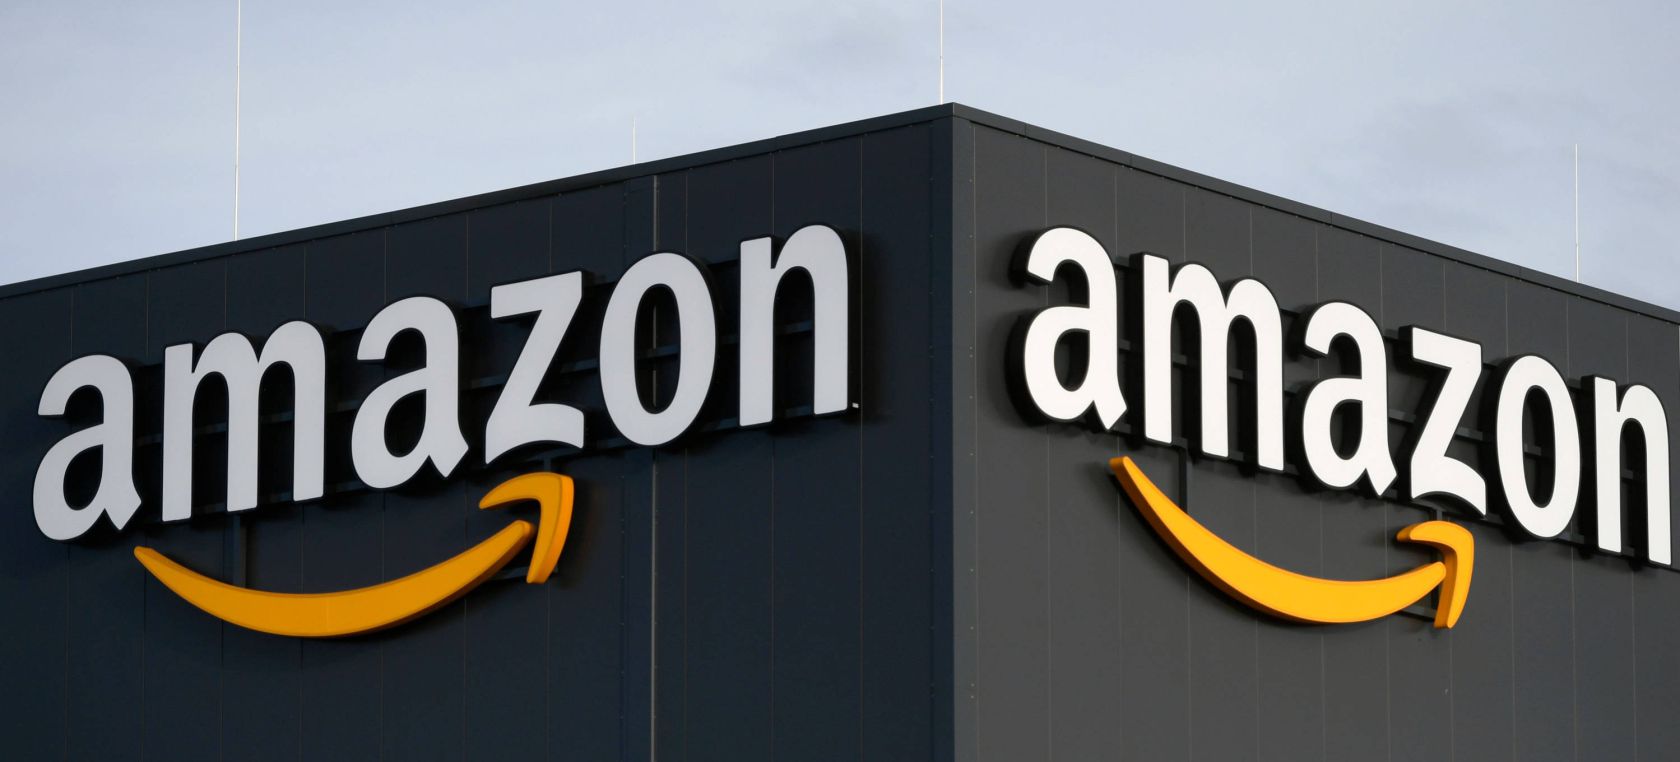 Amazon es la marca más valiosa a nivel mundial